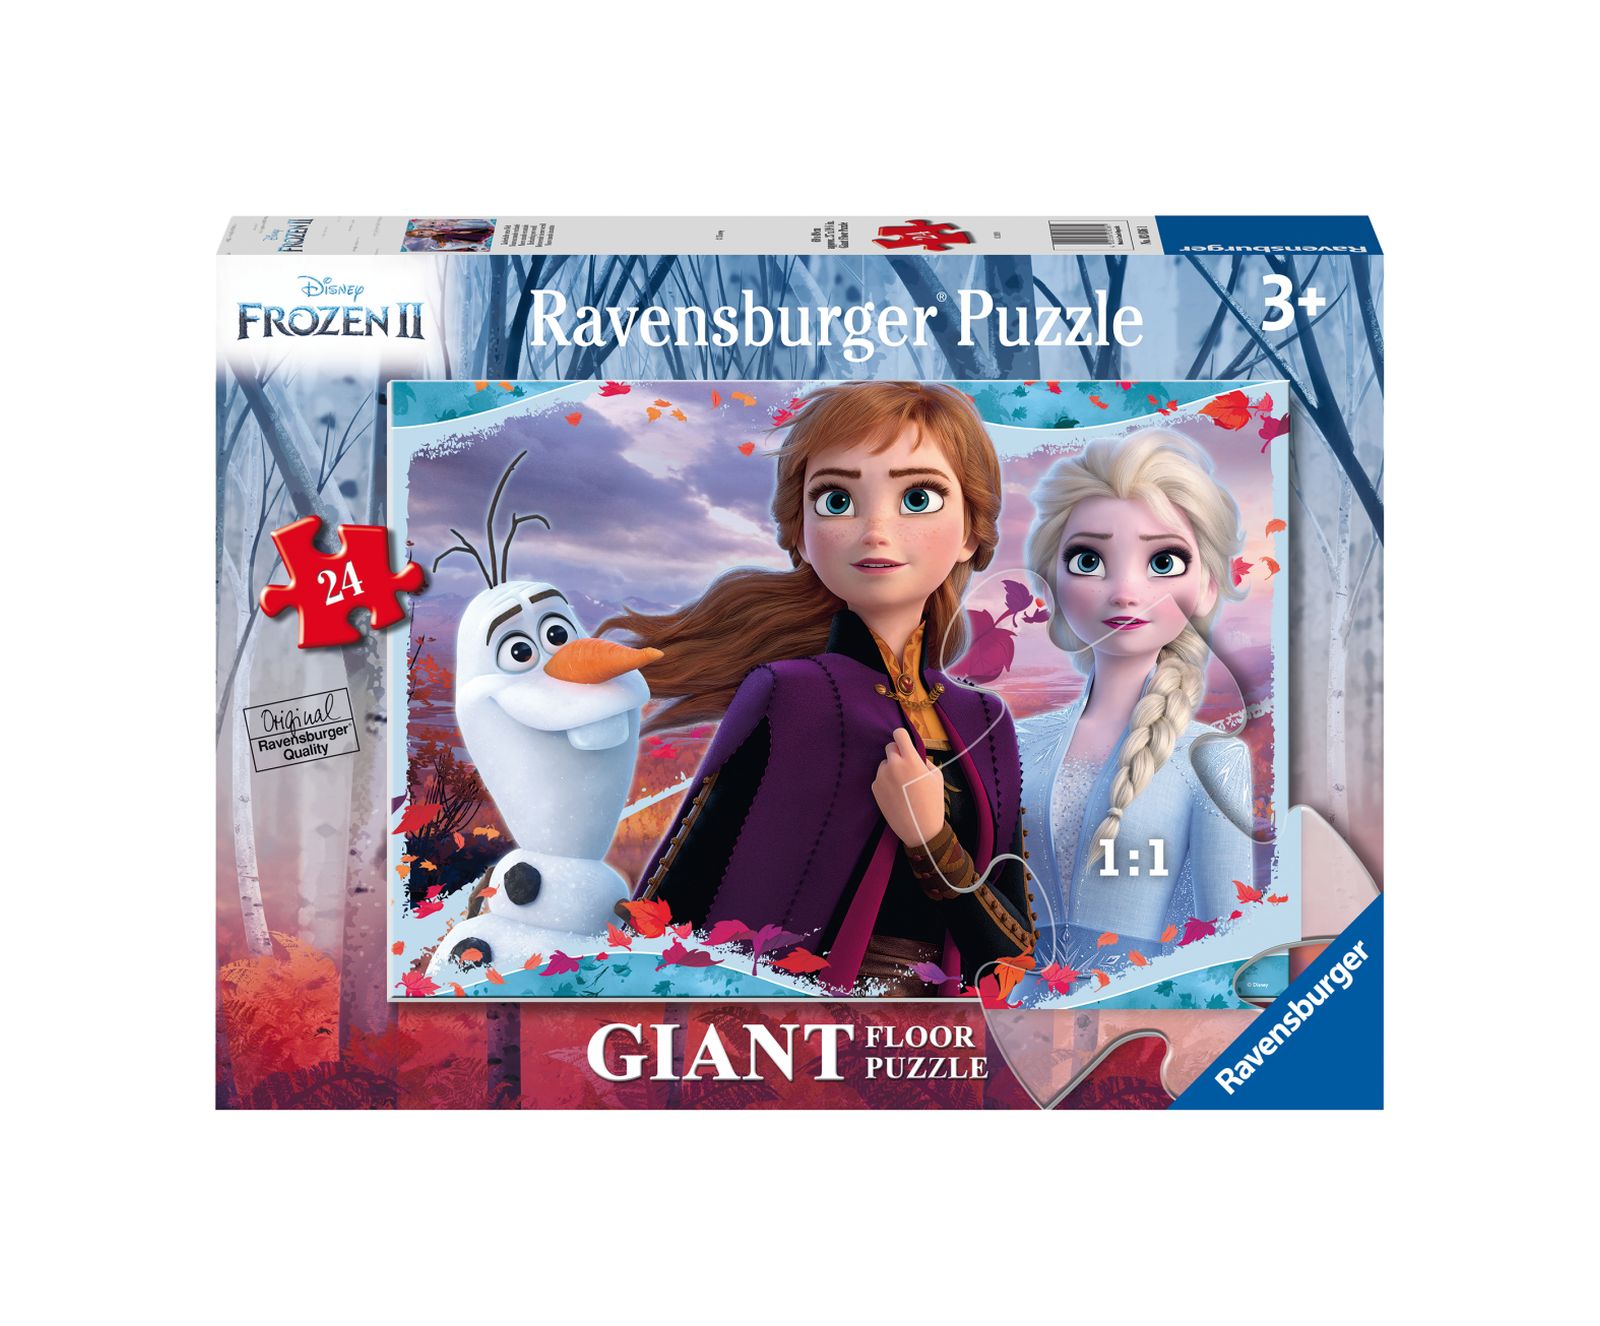 Ravensburger puzzle 24 pezzi giant frozen 2 - DISNEY PRINCESS, RAVENSBURGER, Frozen